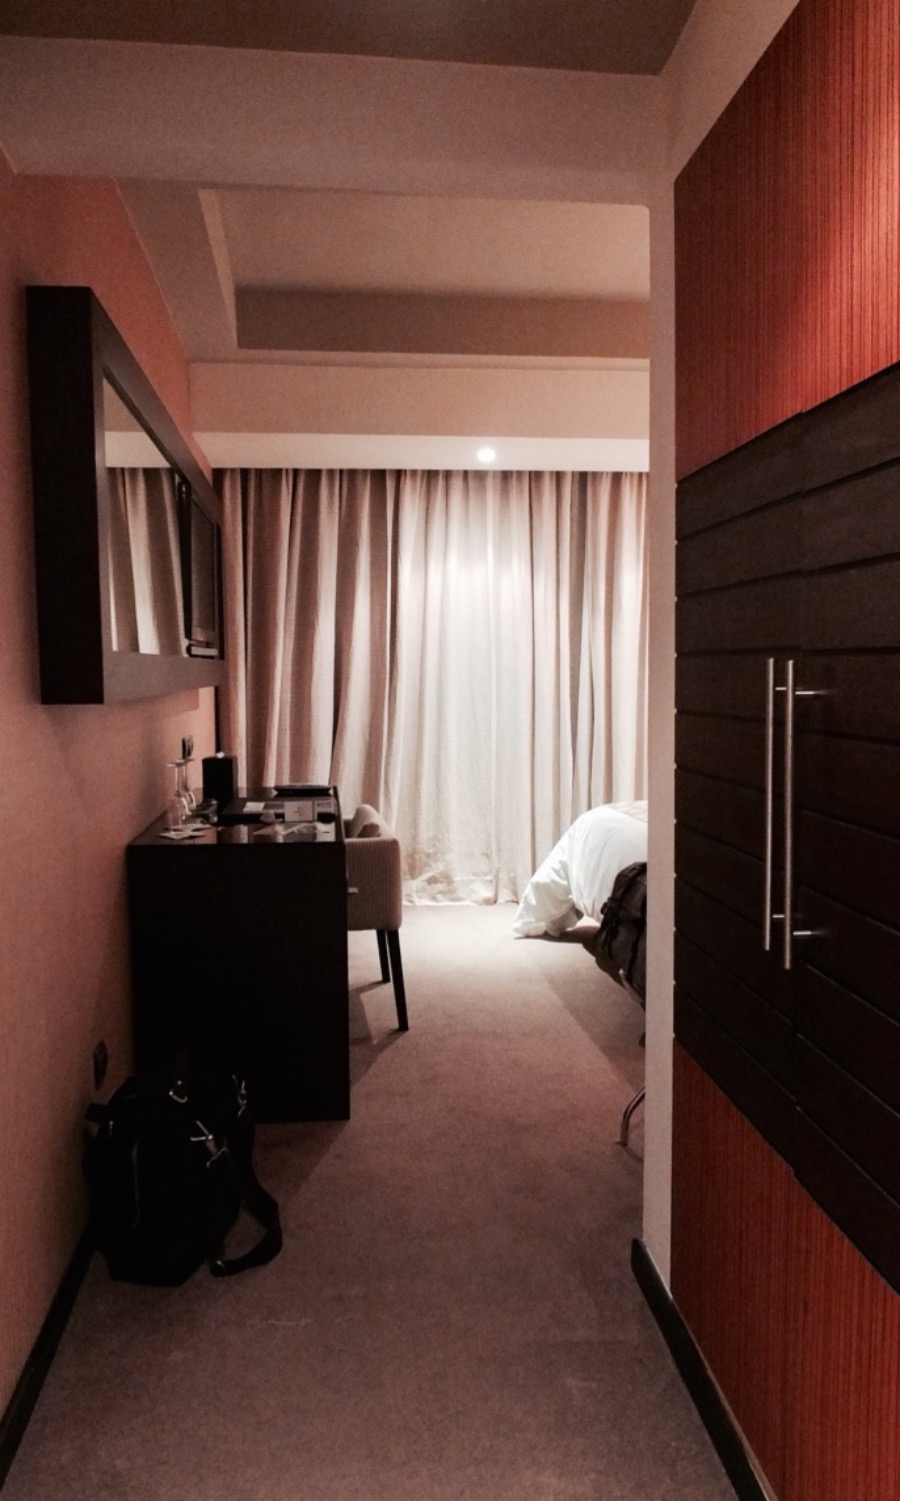 Eingangsbereich Superior Room Villa Blanca Hotel Casablanca Review Travel with Massi